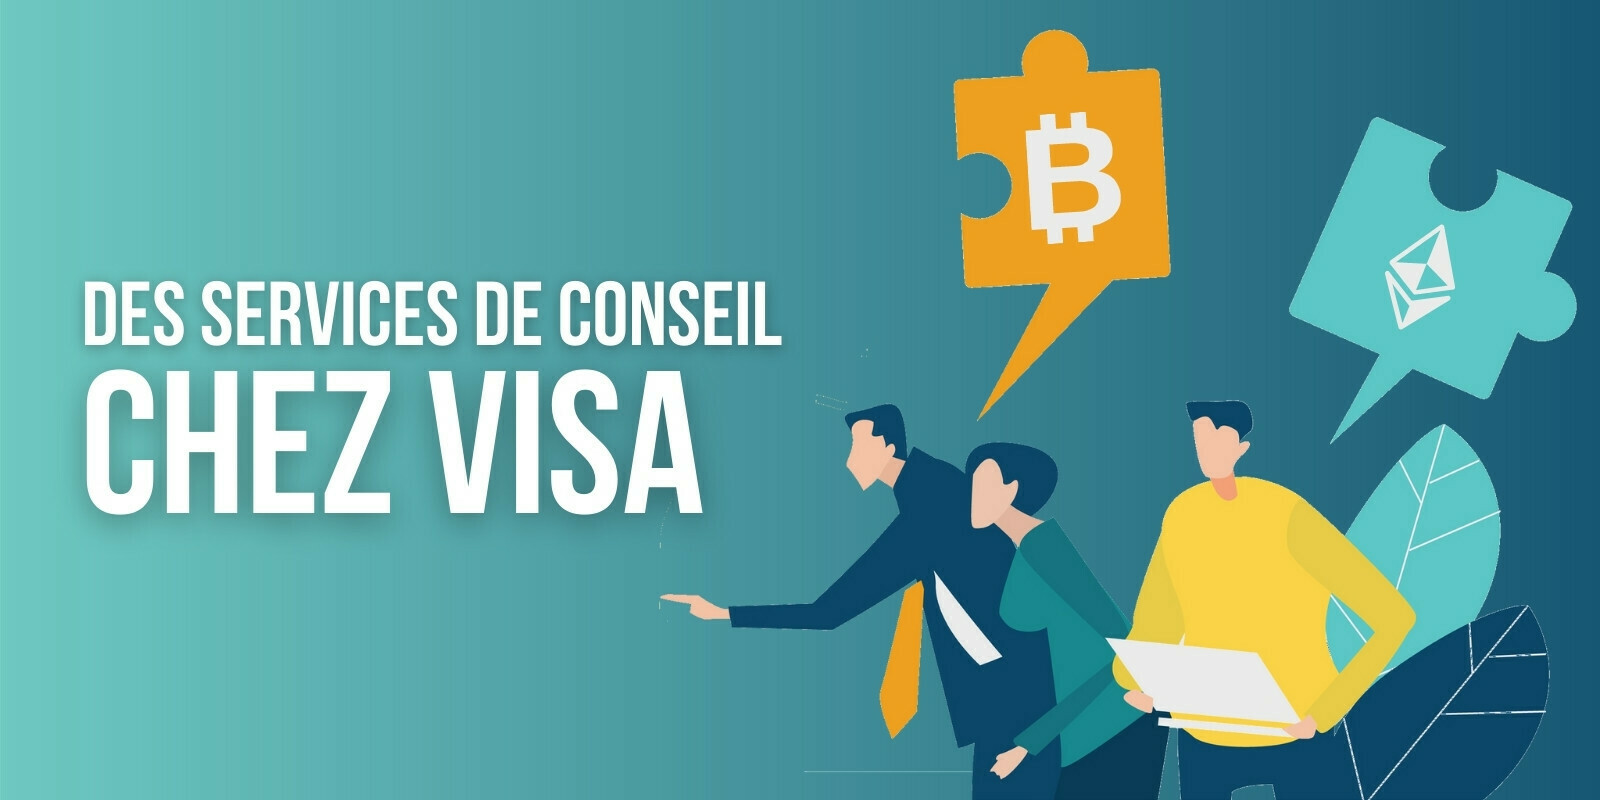 Visa lance un service de conseil en cryptomonnaies pour accompagner ses clients